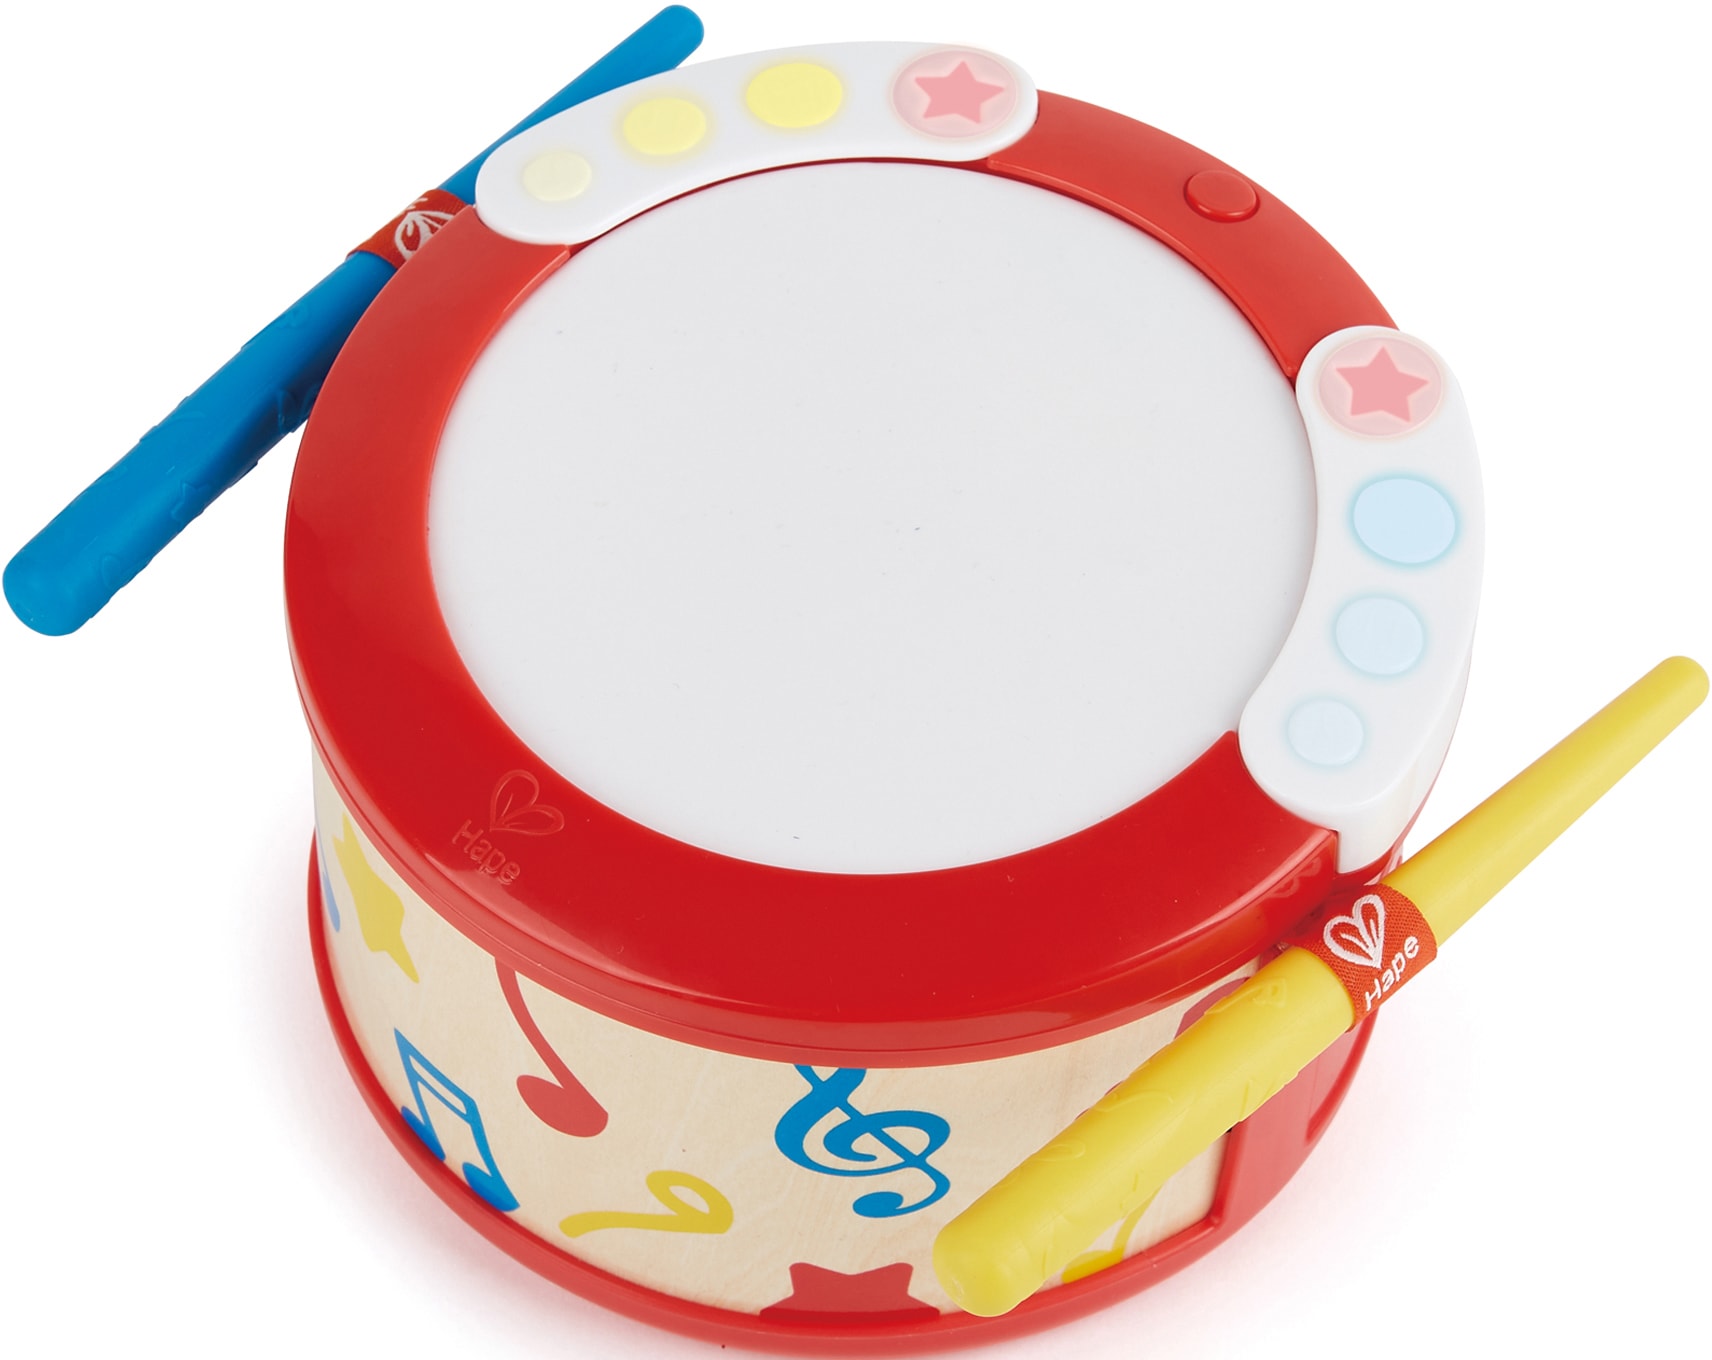 Spielzeug-Musikinstrument »Lern-Spiel-Trommel«, mit Licht & Sound